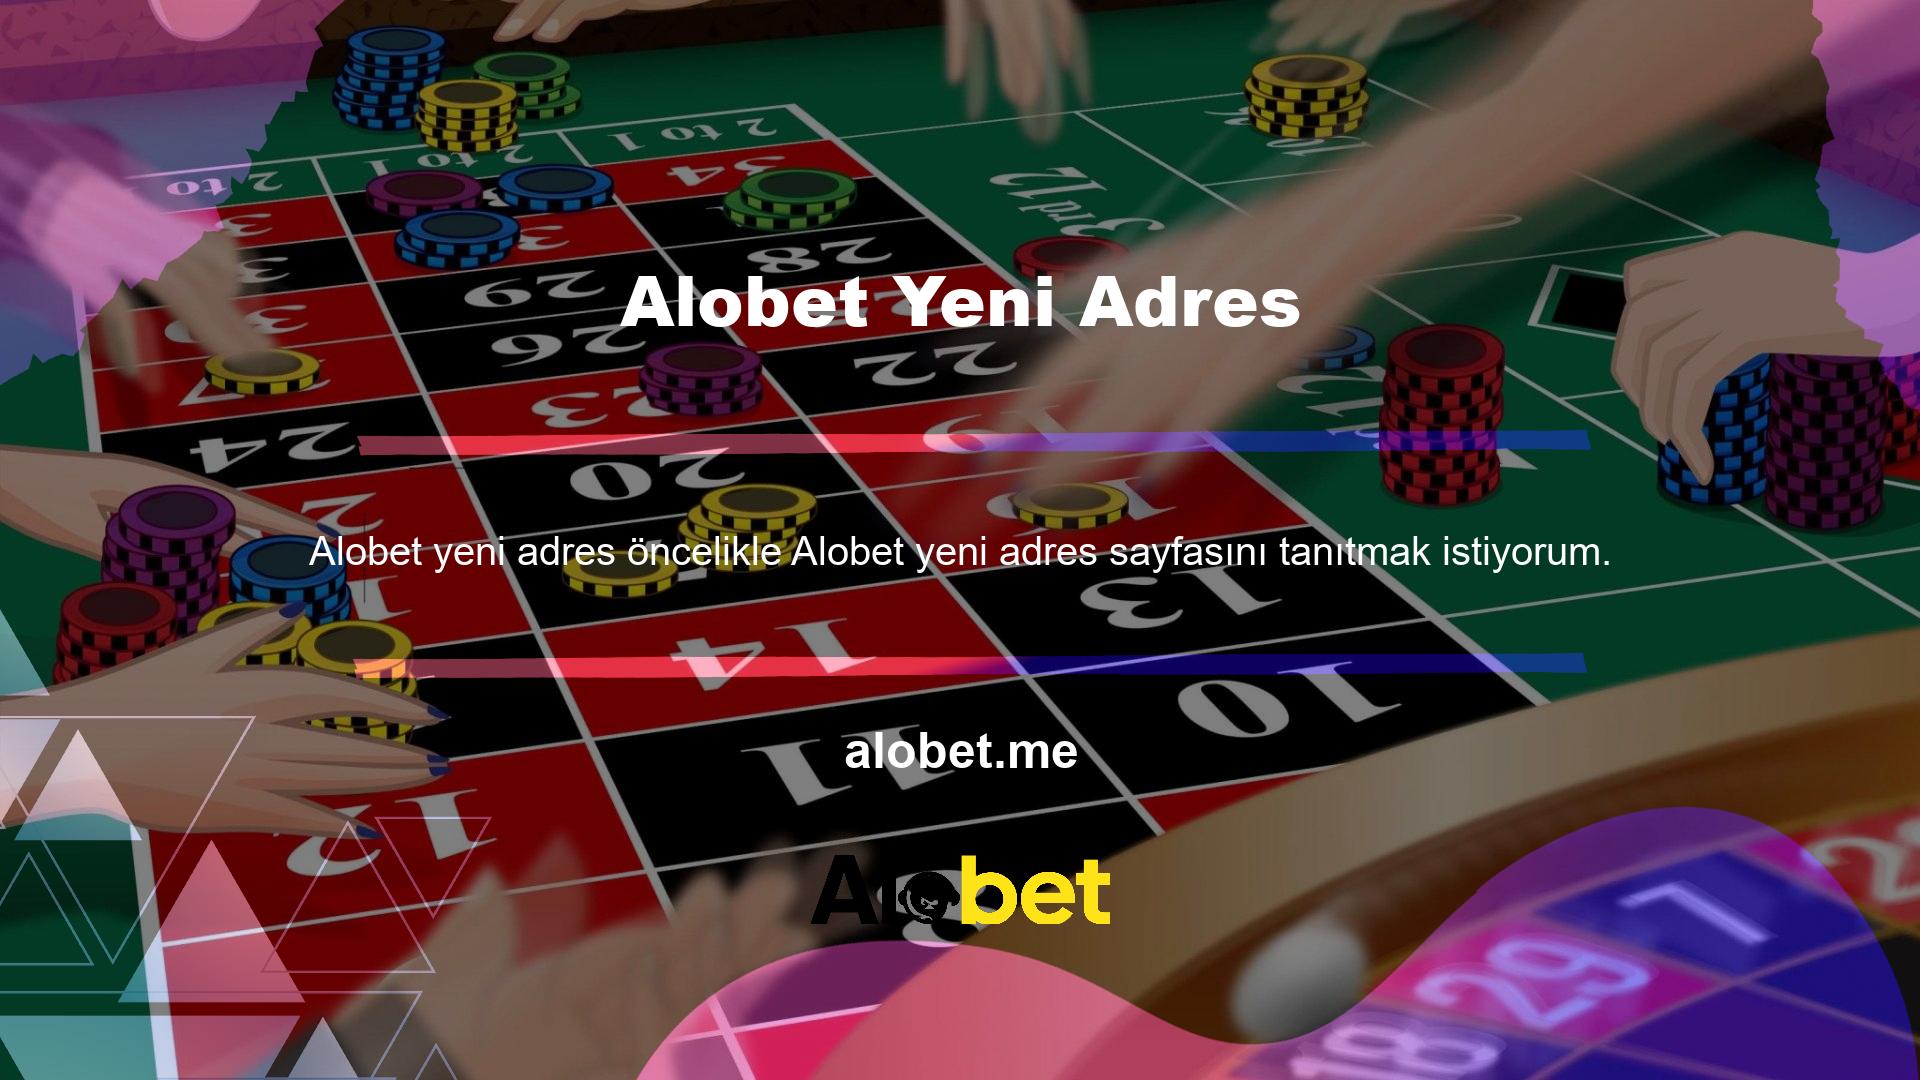 Alobet adresini neden yurtdışı Alobet casino sitesi olarak değiştirdi sorusunun cevabına bir göz atalım